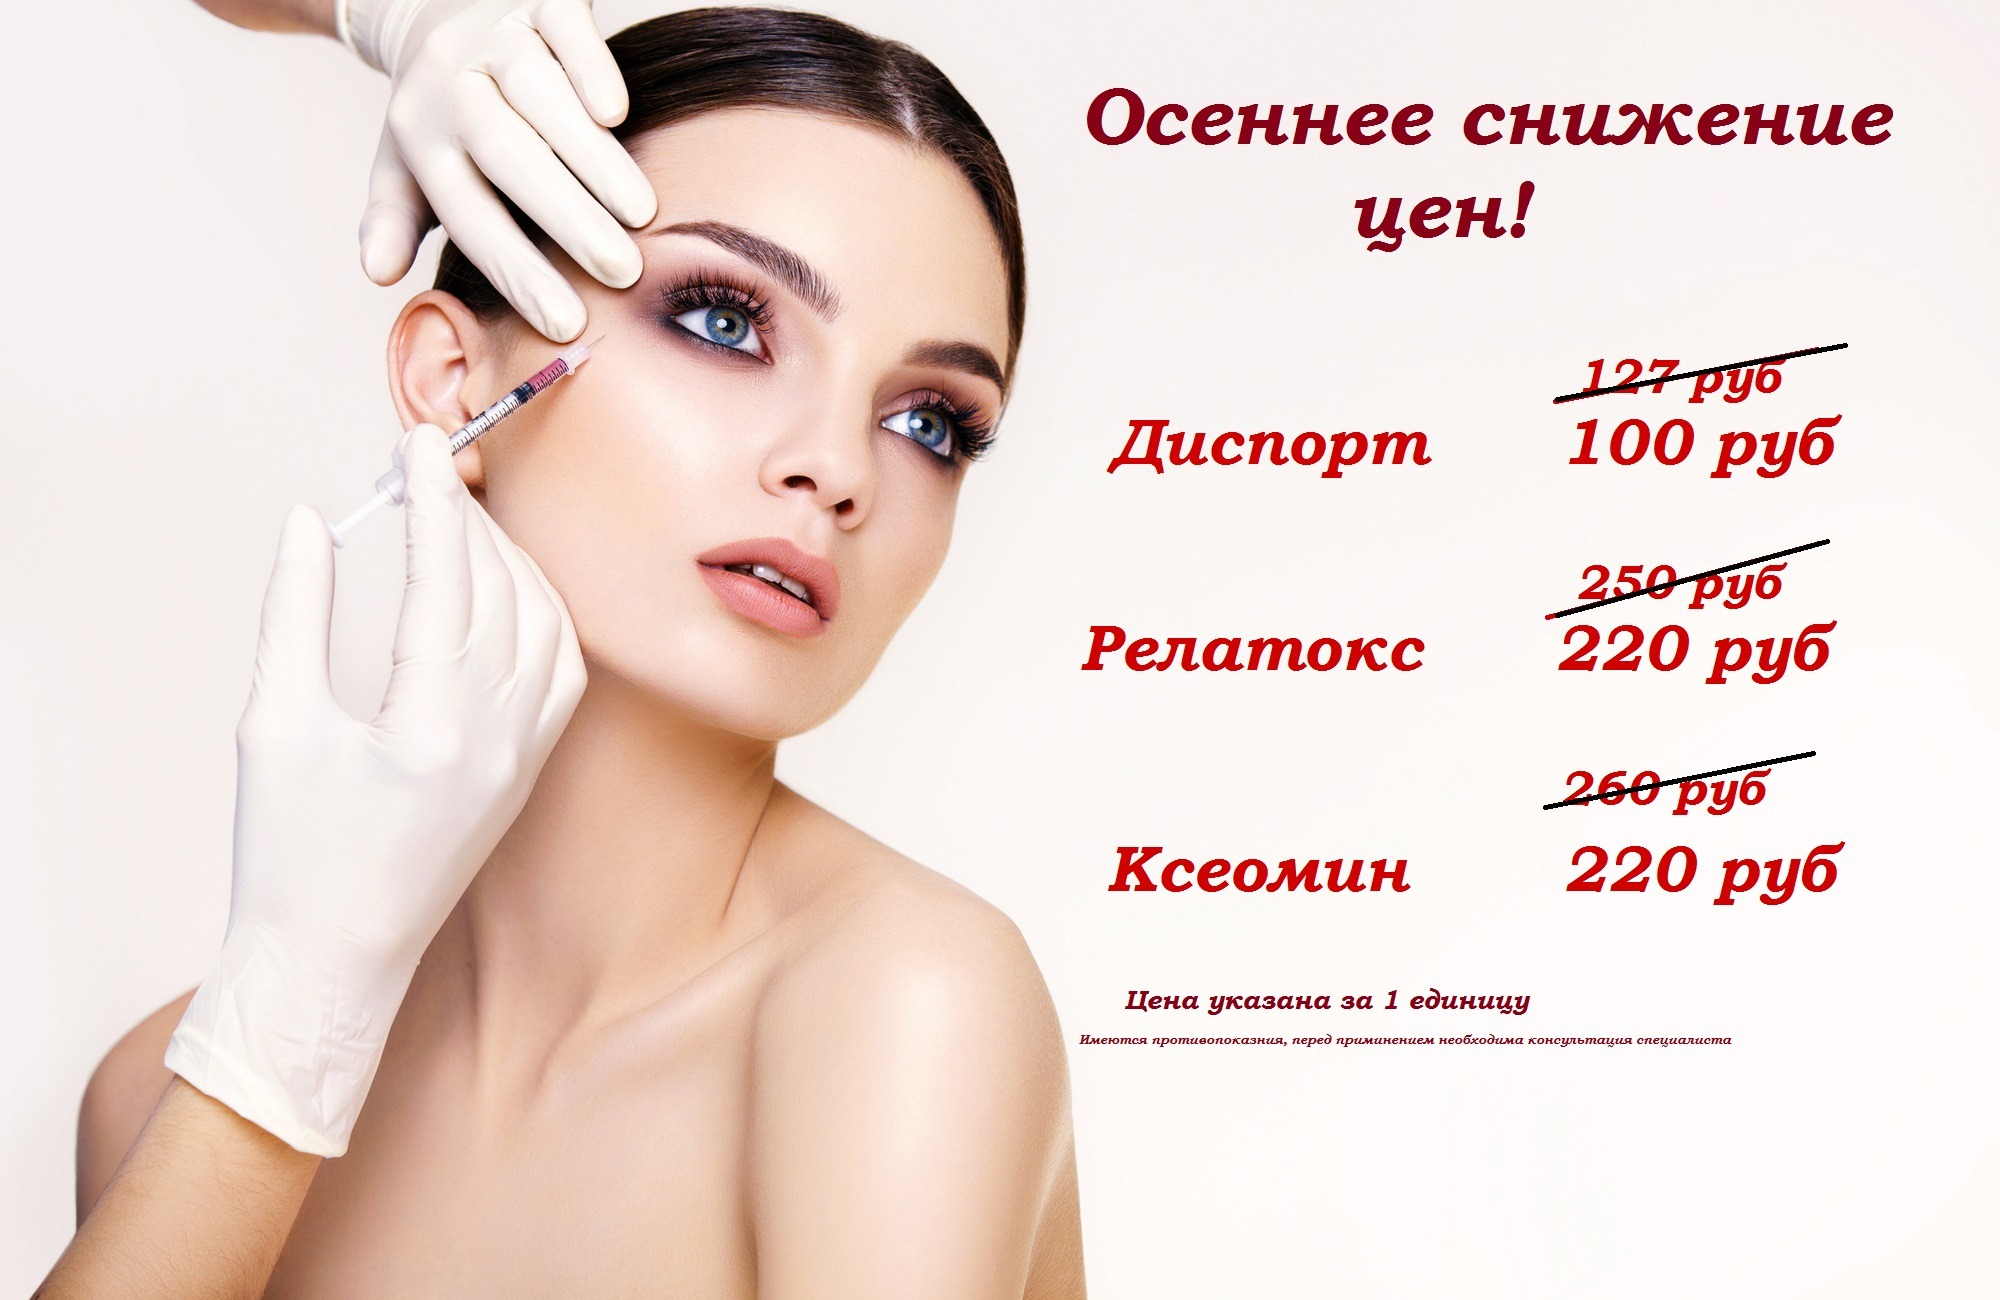 Косметология Ижевск - центры косметологии, косметологические и СПА-салоны, частные врачи косметологи Ижевска 